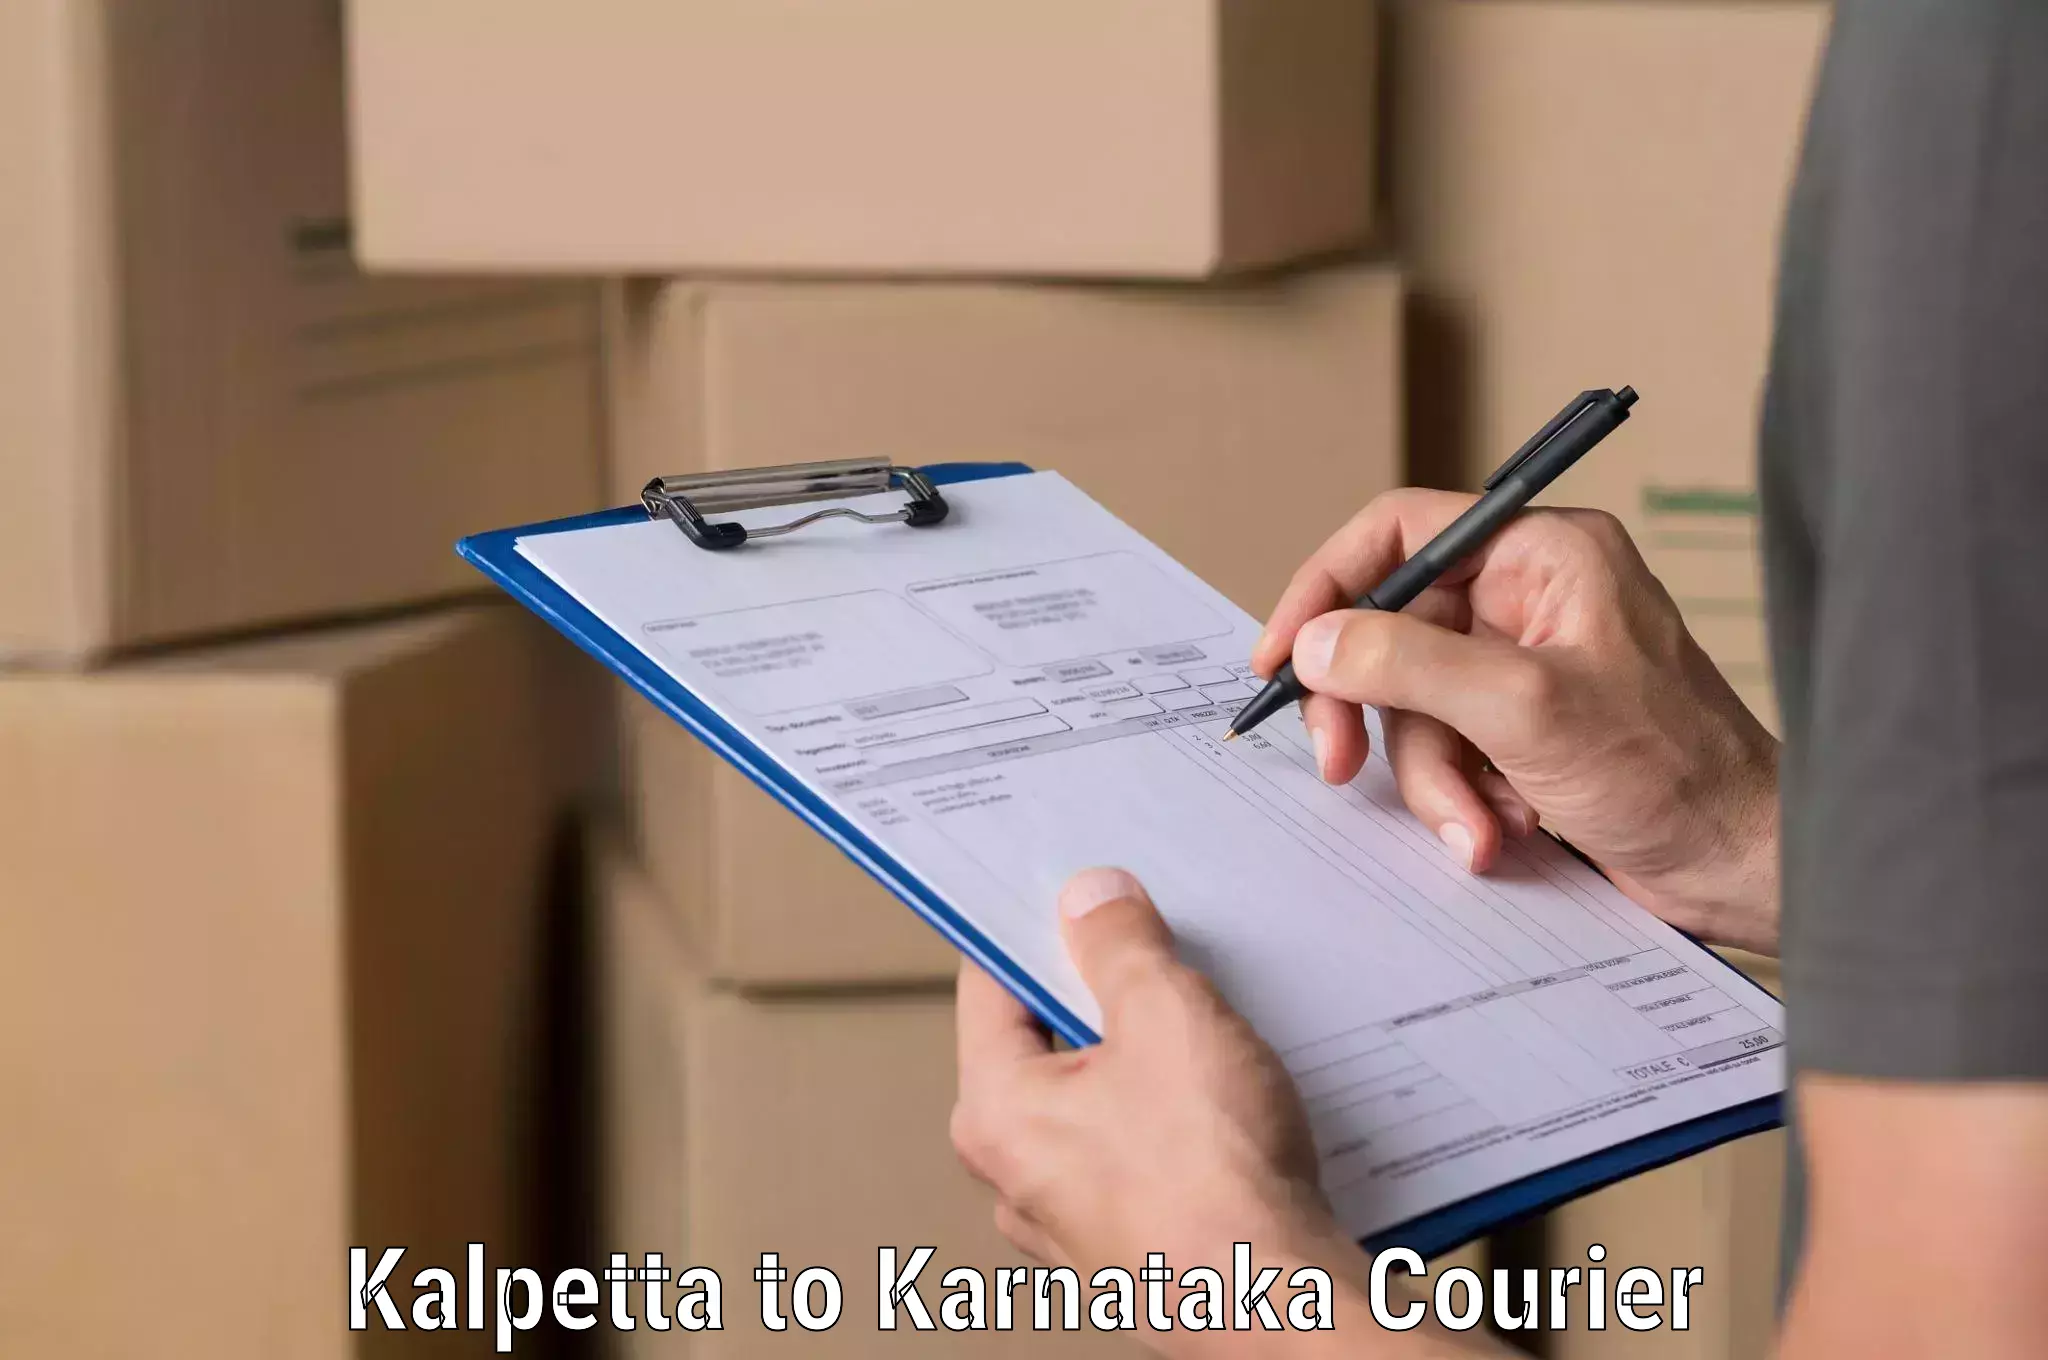 Customer-centric shipping in Kalpetta to Yaragatti